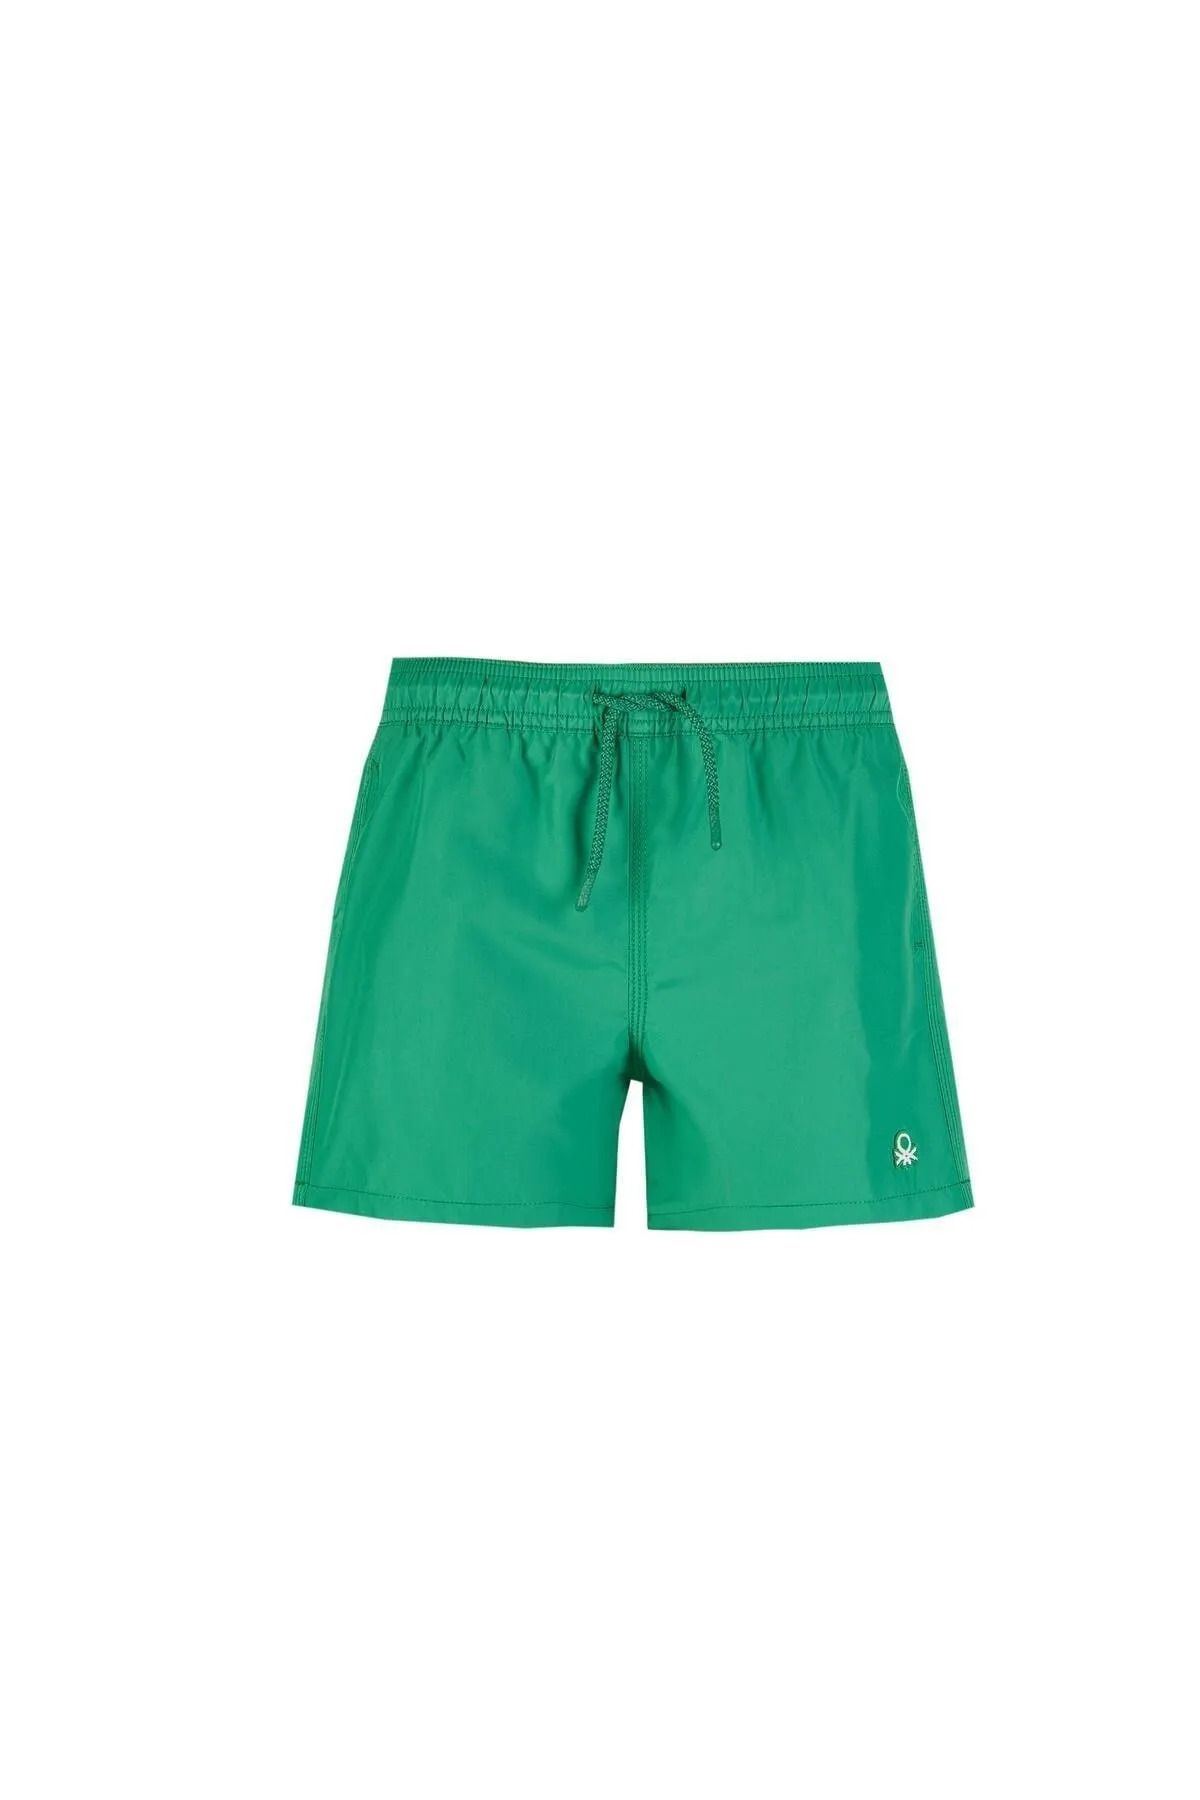 Benetton Erkek Çocuk Şort - Yeşil